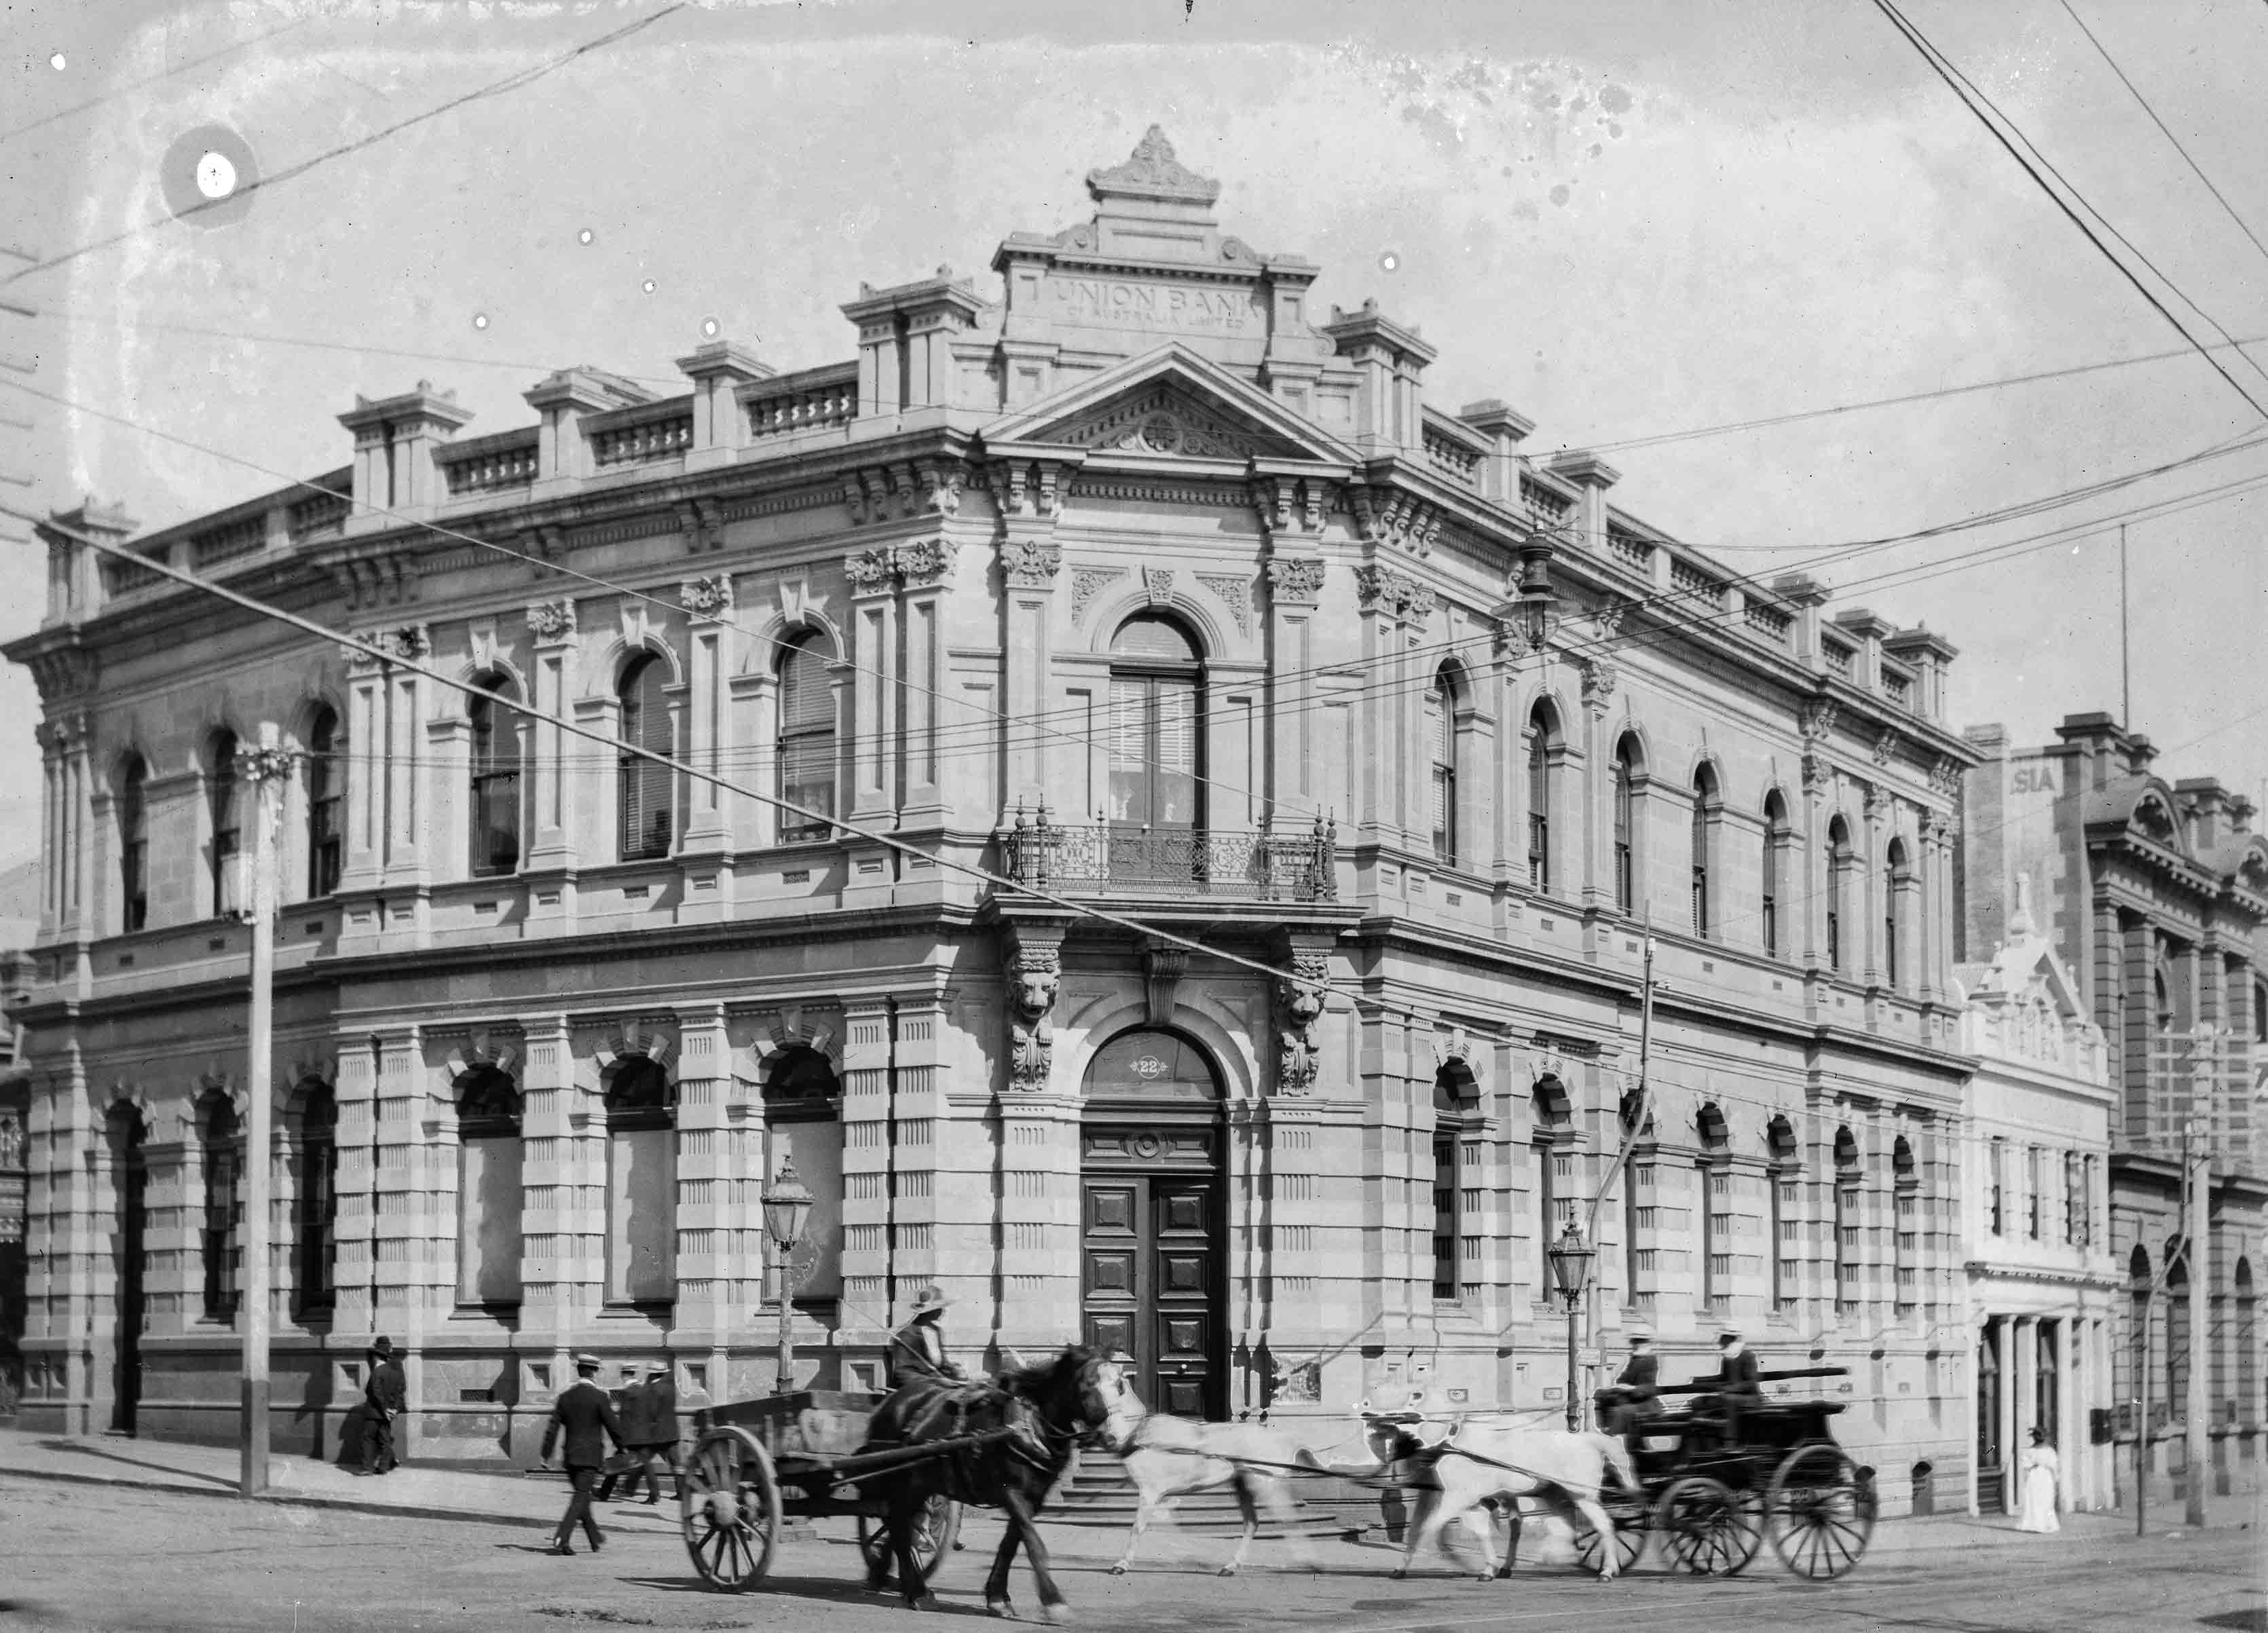 1900s Union Bank formerly Van Diemen's Bank NS392-1-747